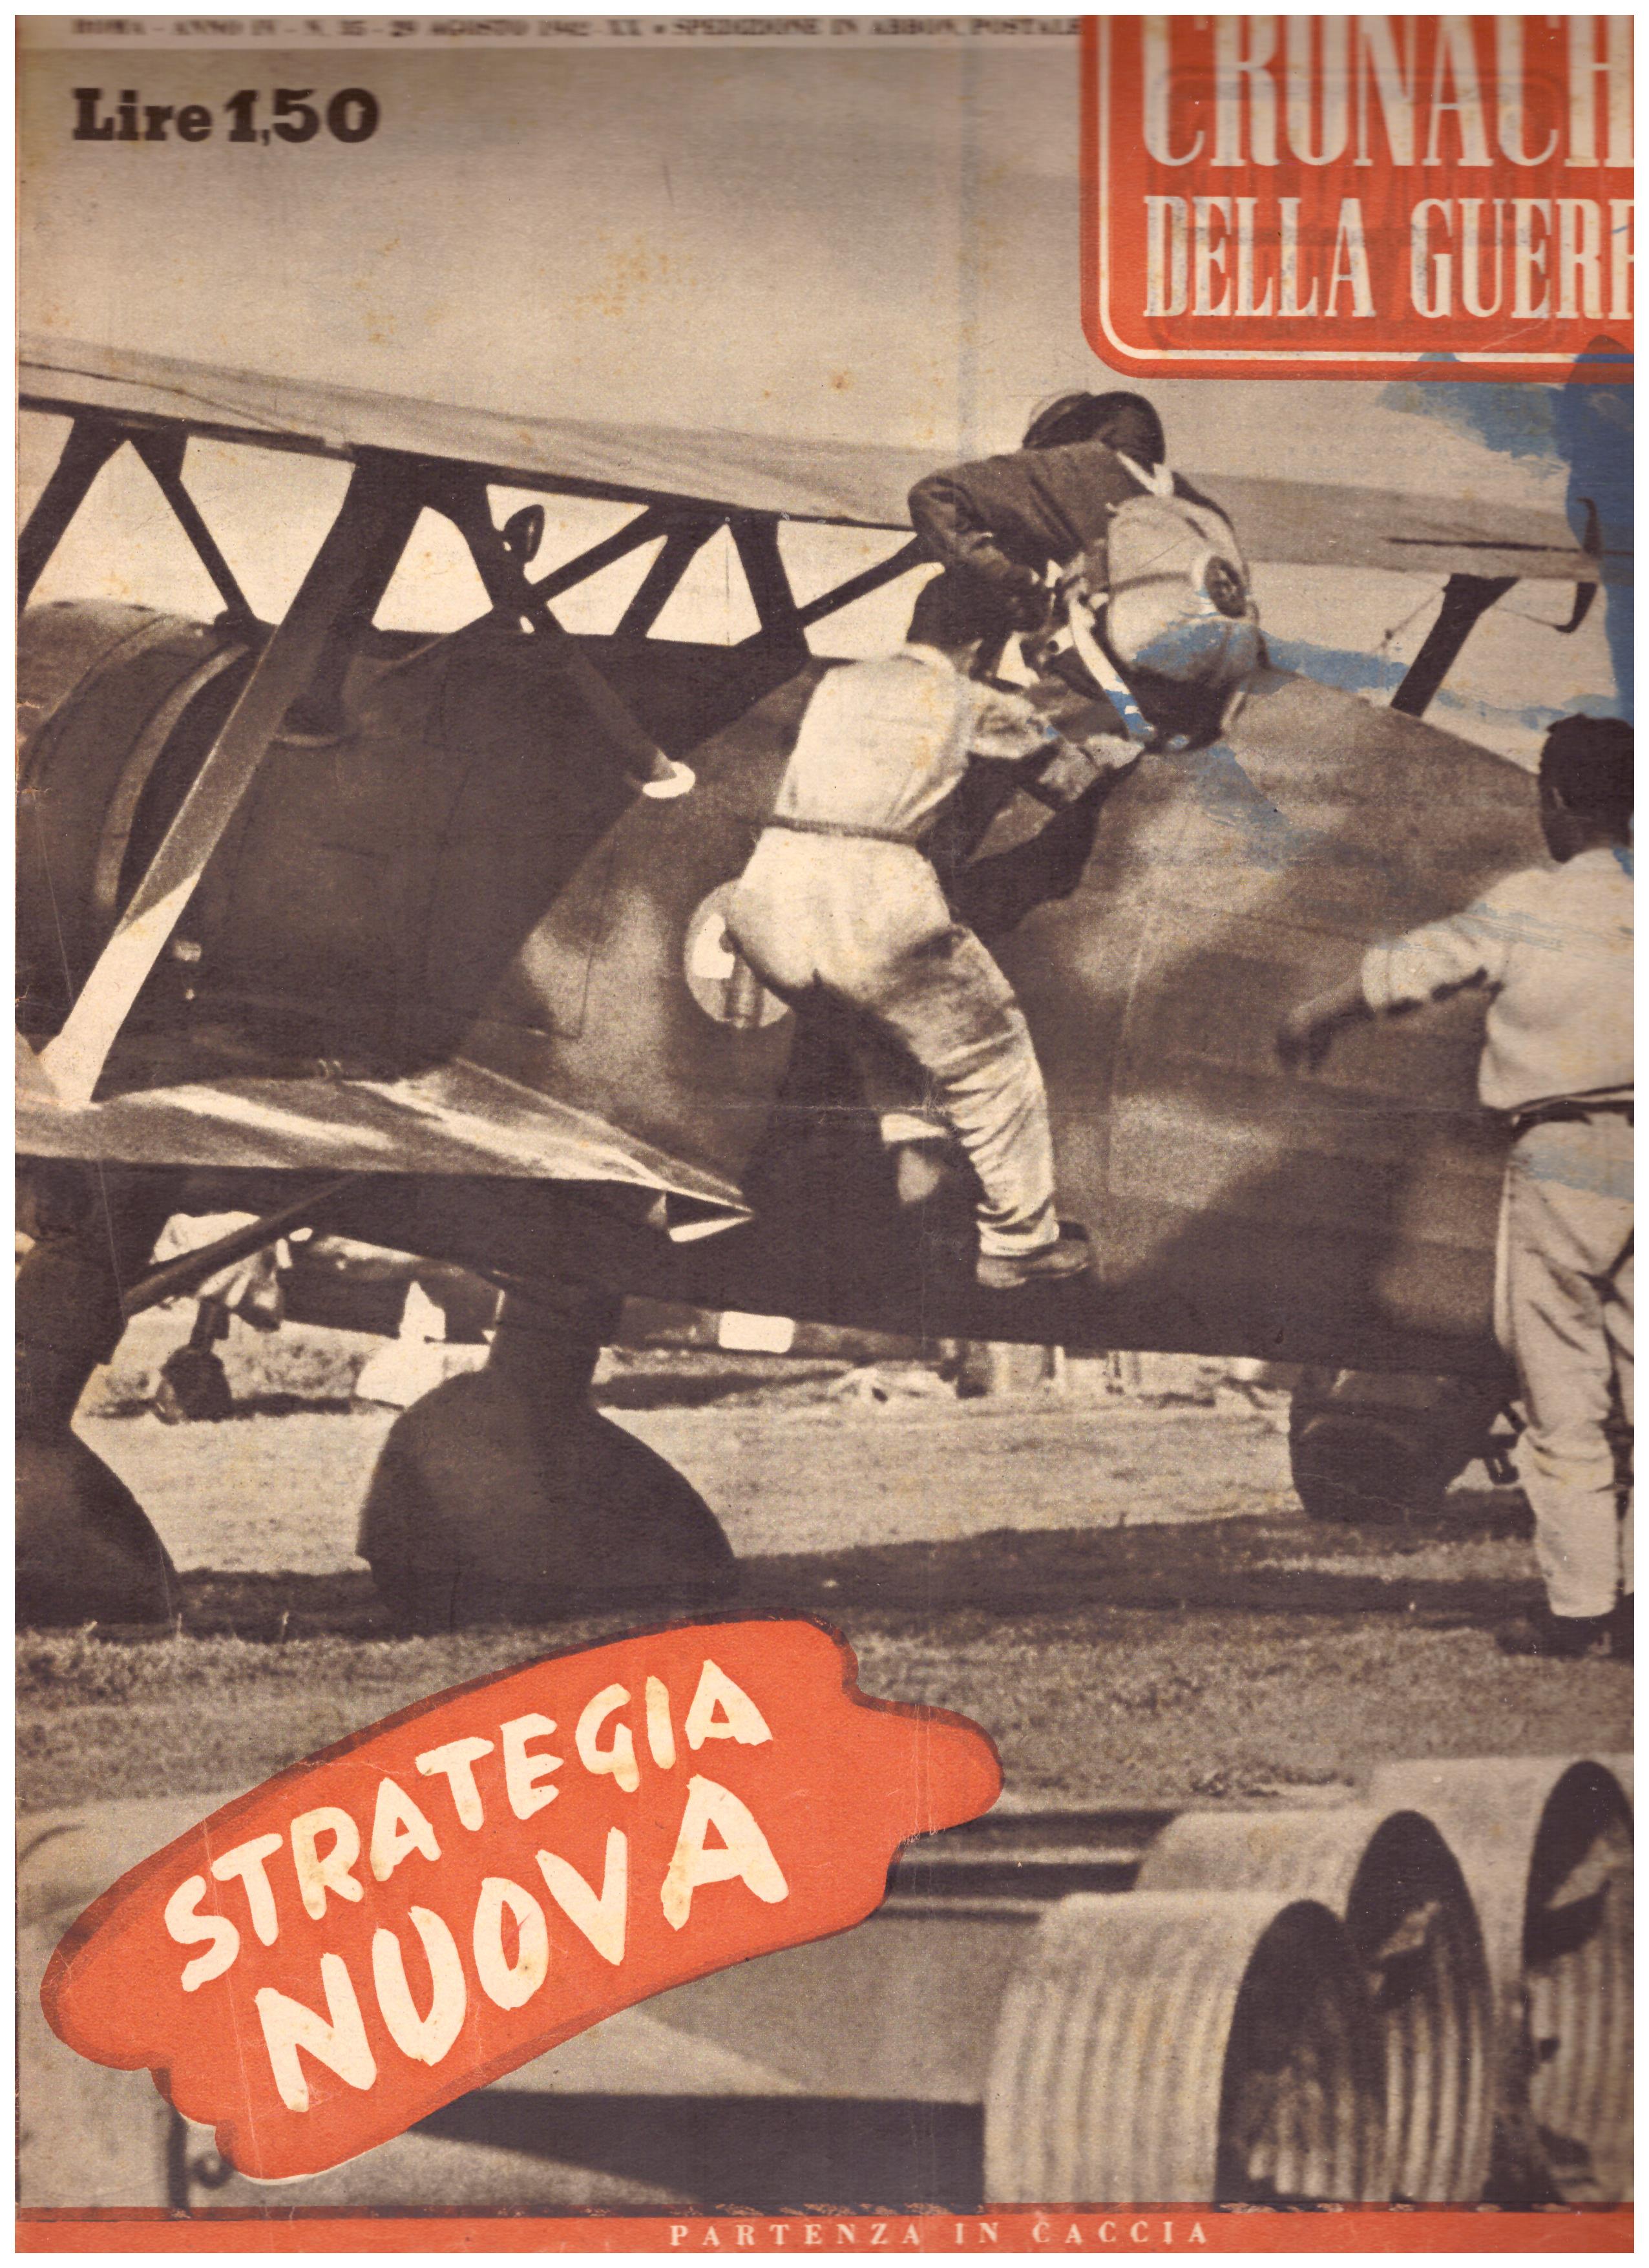 Titolo: Cronache della guerra, Roma Anno IV N.35 29 agosto 1942  Autore : AA.VV.   Editore: Tumminelli editore Roma